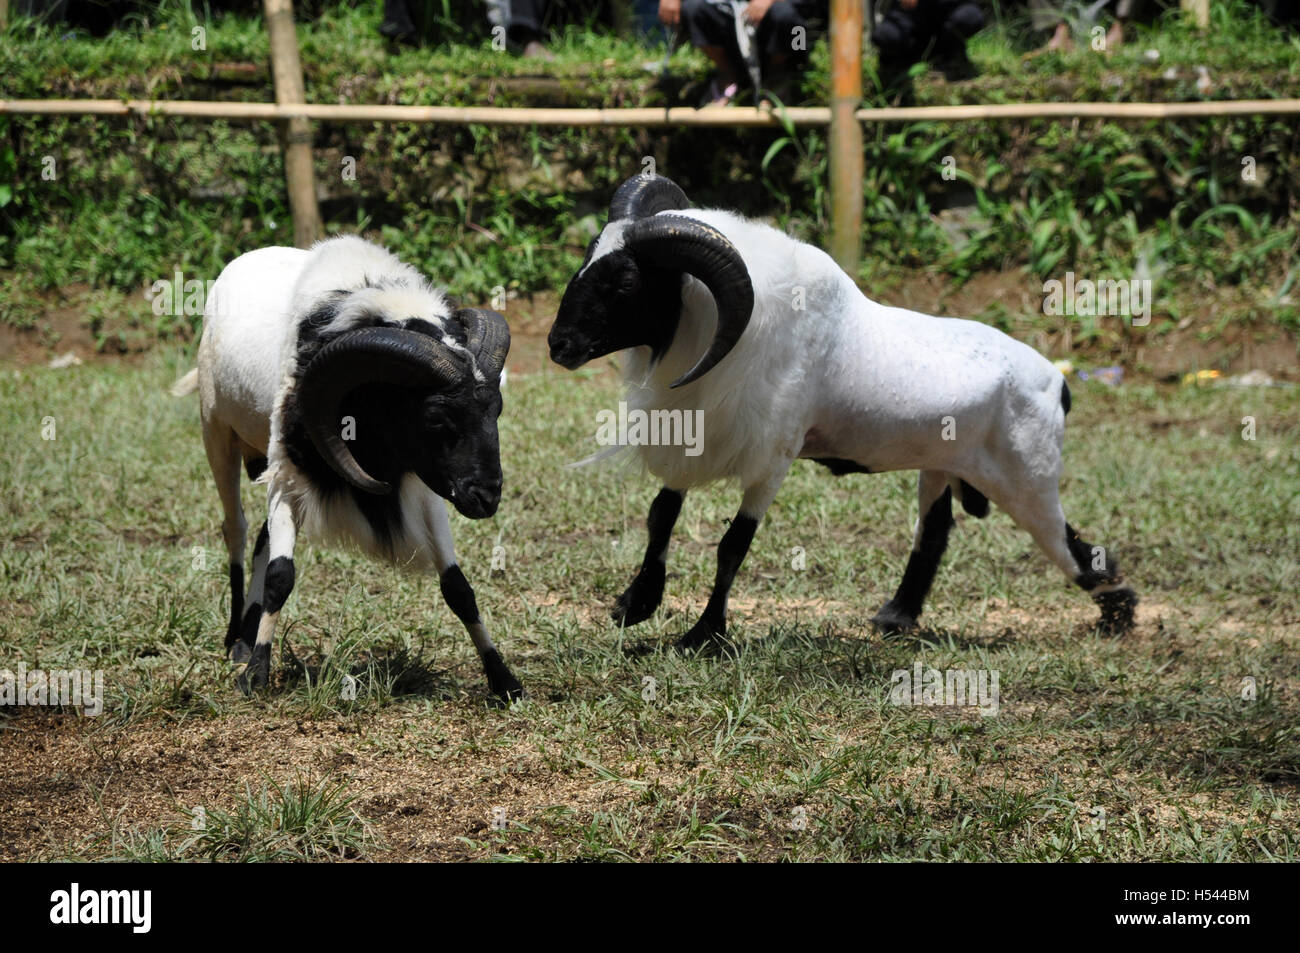 La concurrence dans la lutte contre le mouflon Garut, Java ouest, Indonésie Banque D'Images